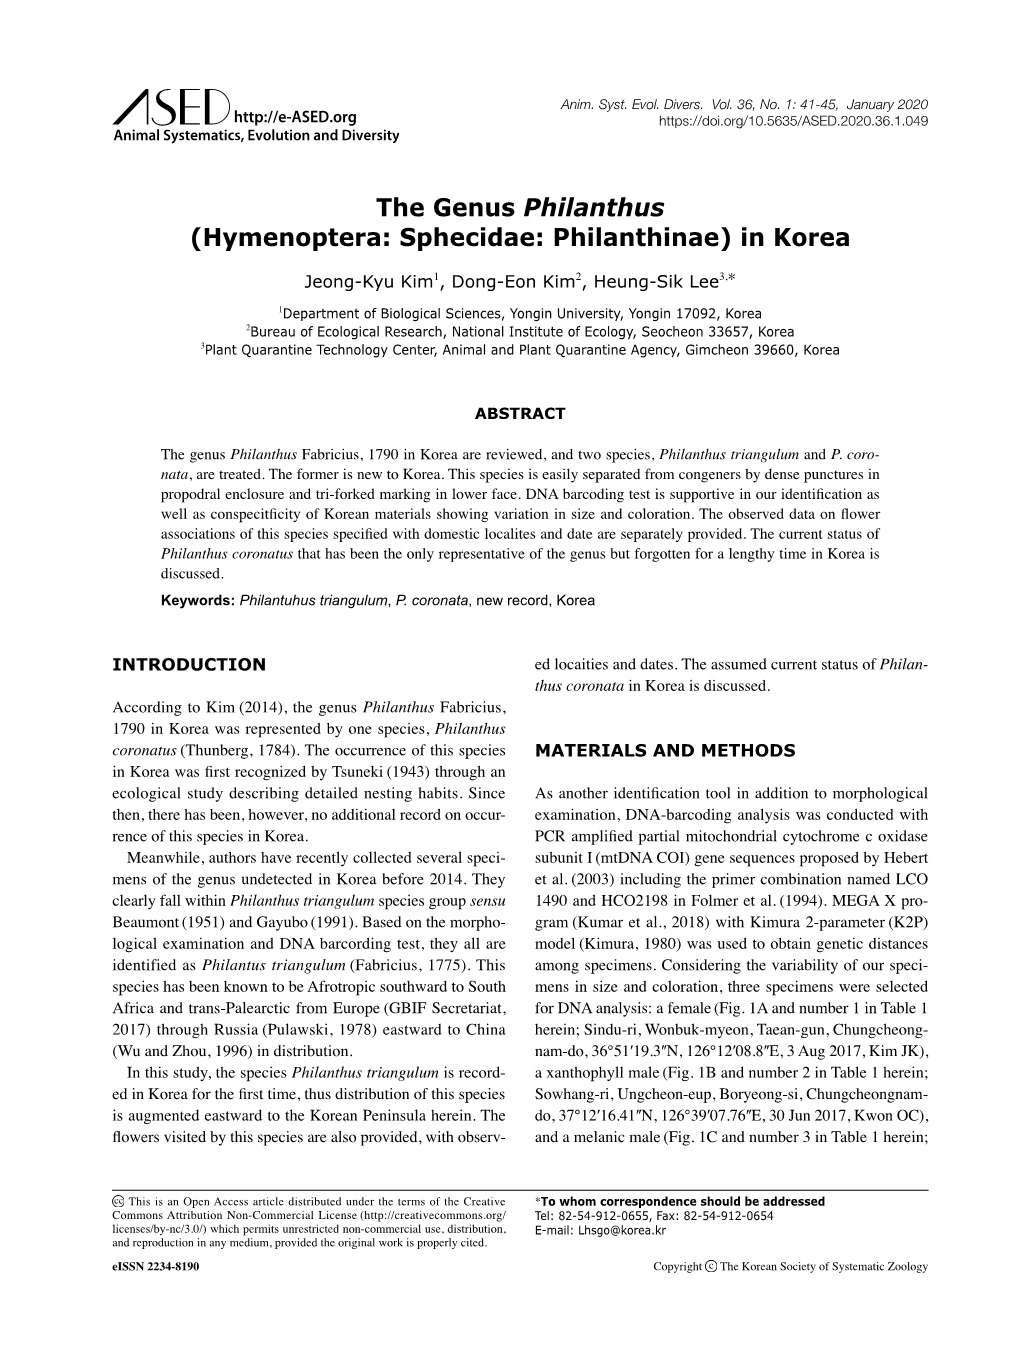 The Genus Philanthus (Hymenoptera: Sphecidae: Philanthinae) in Korea